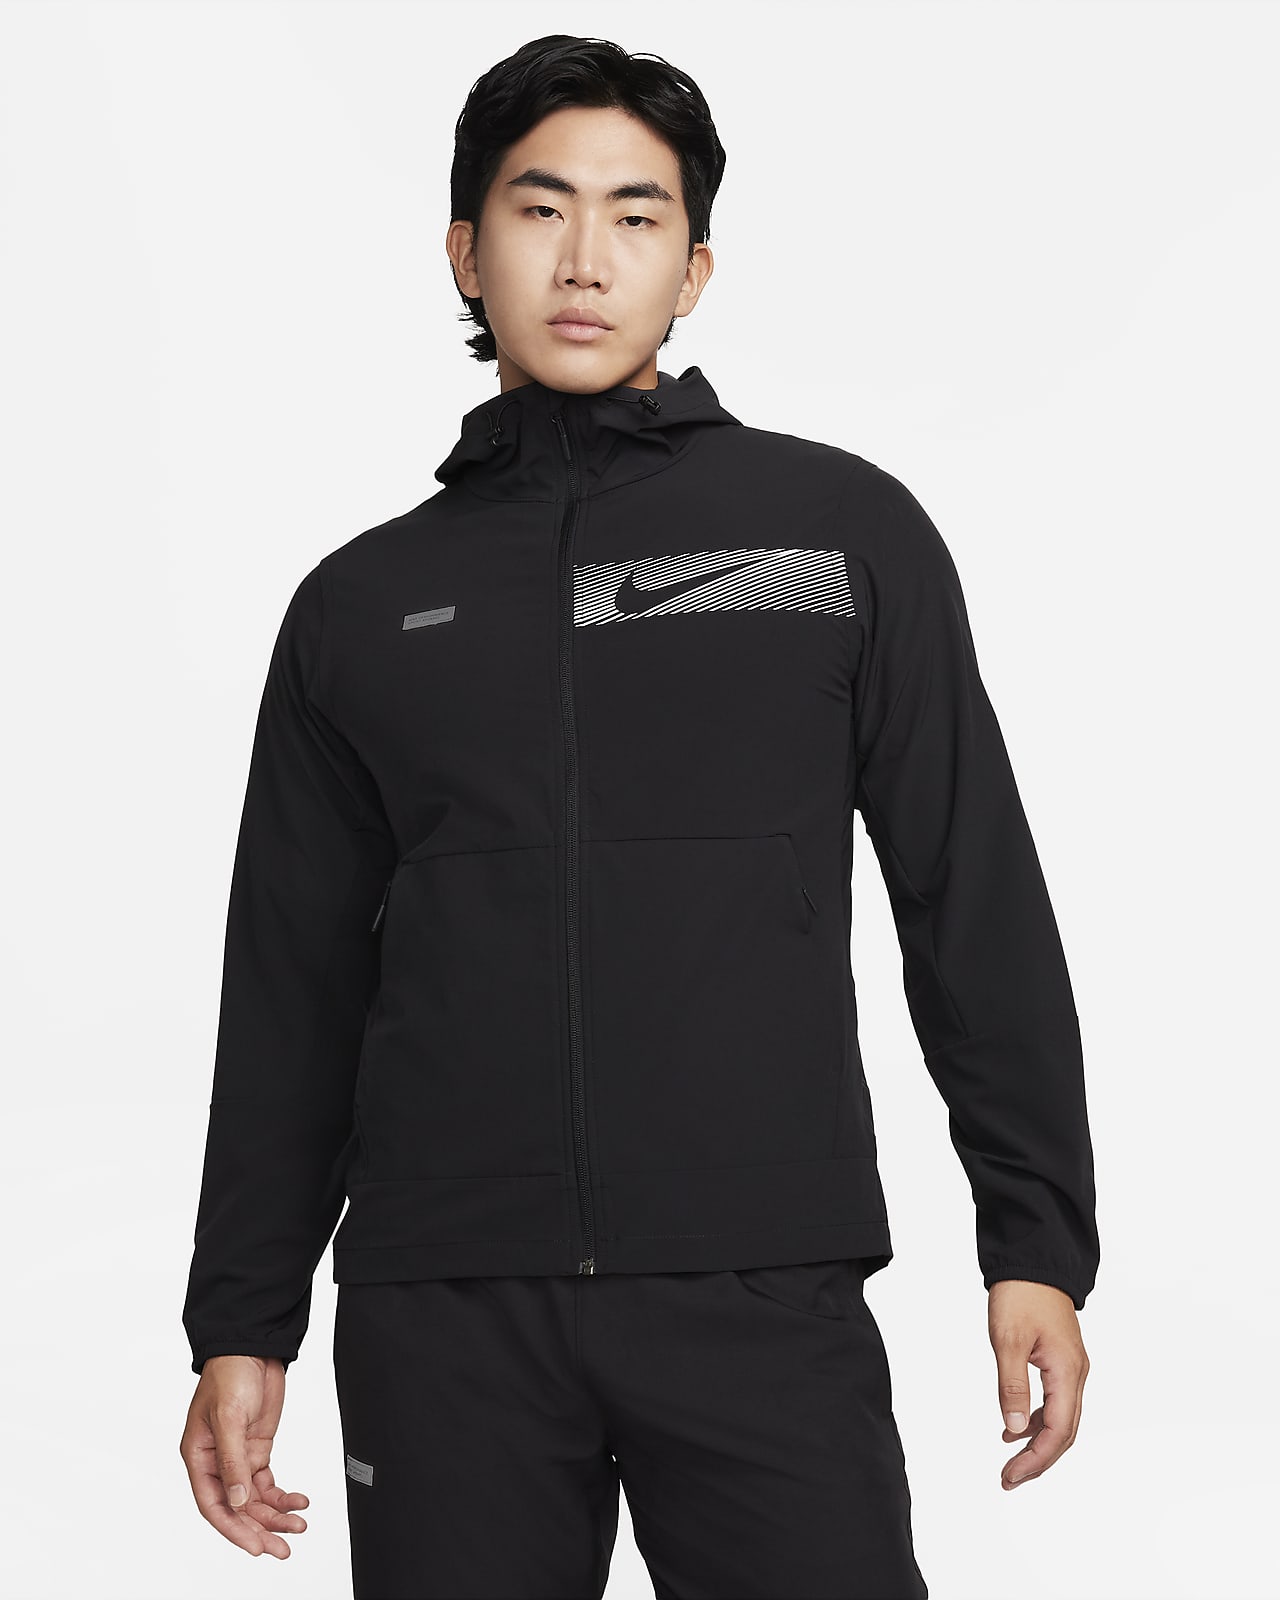 Nike Unlimited Chaqueta con capucha versátil y repelente al agua - Hombre